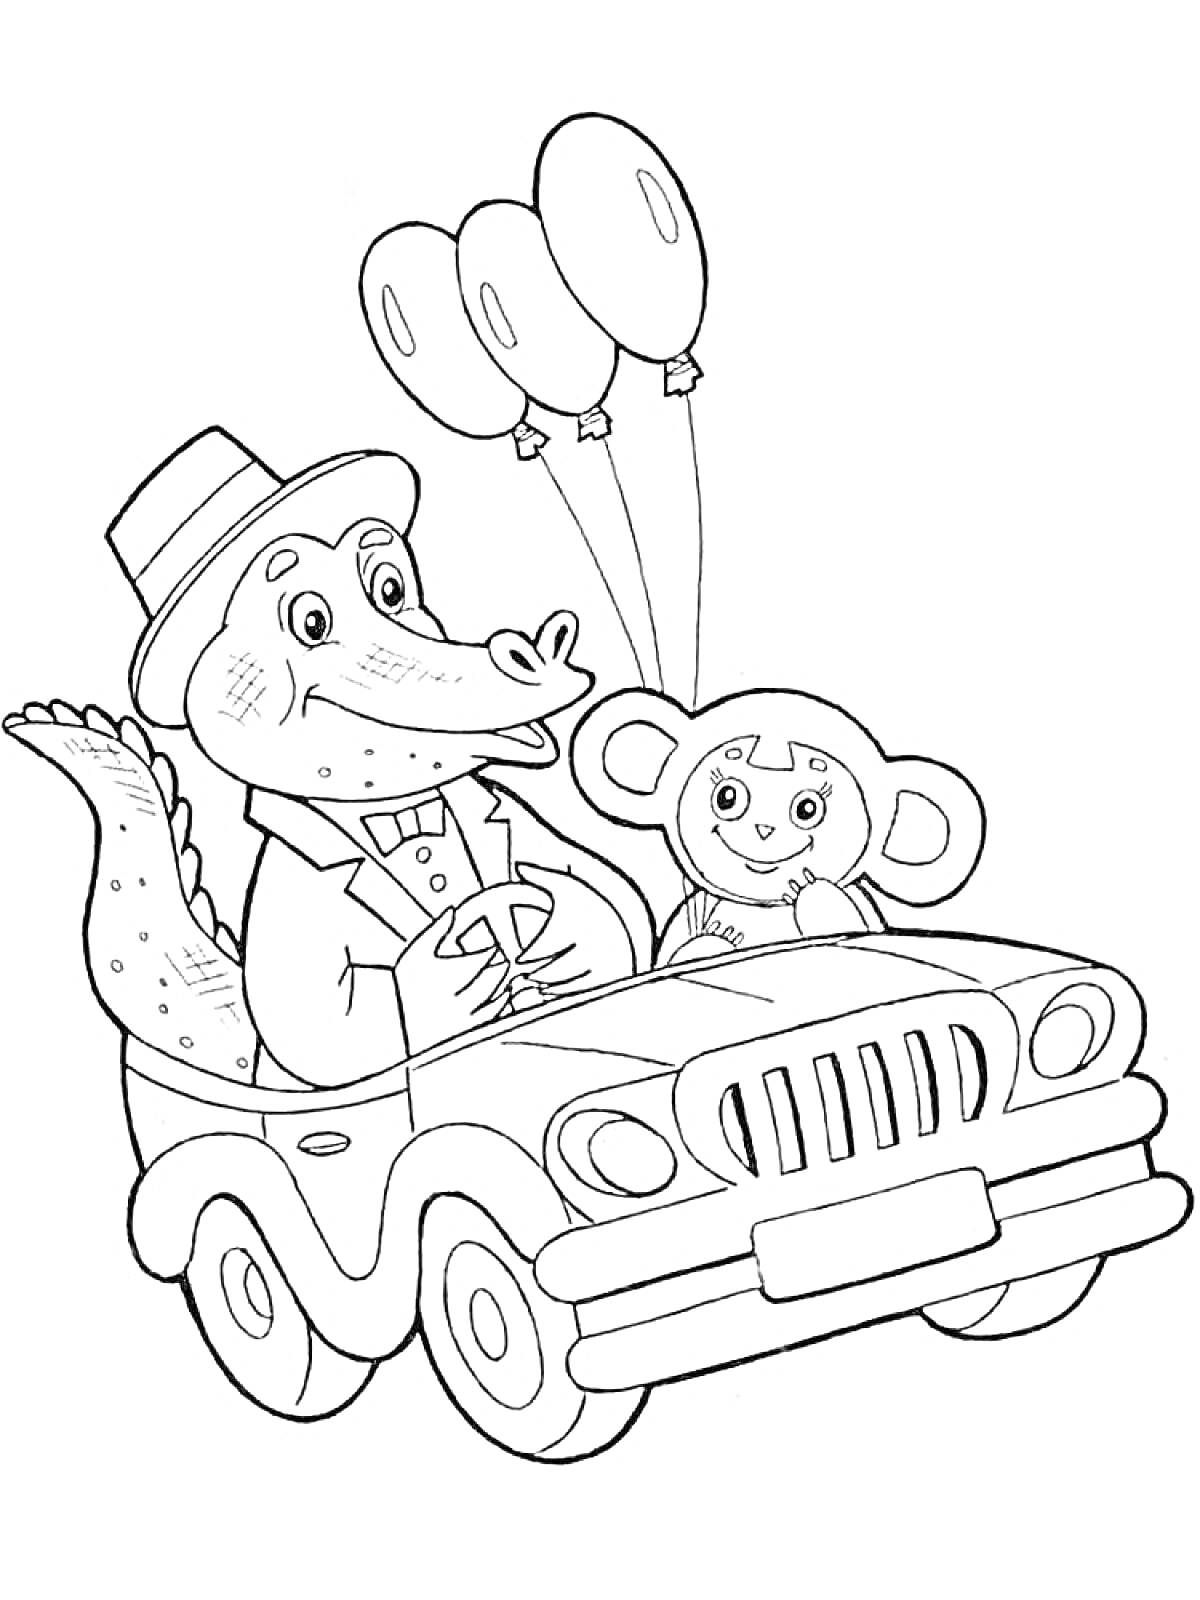 Раскраска Чебурашка и Крокодил Гена в машине с воздушными шарами